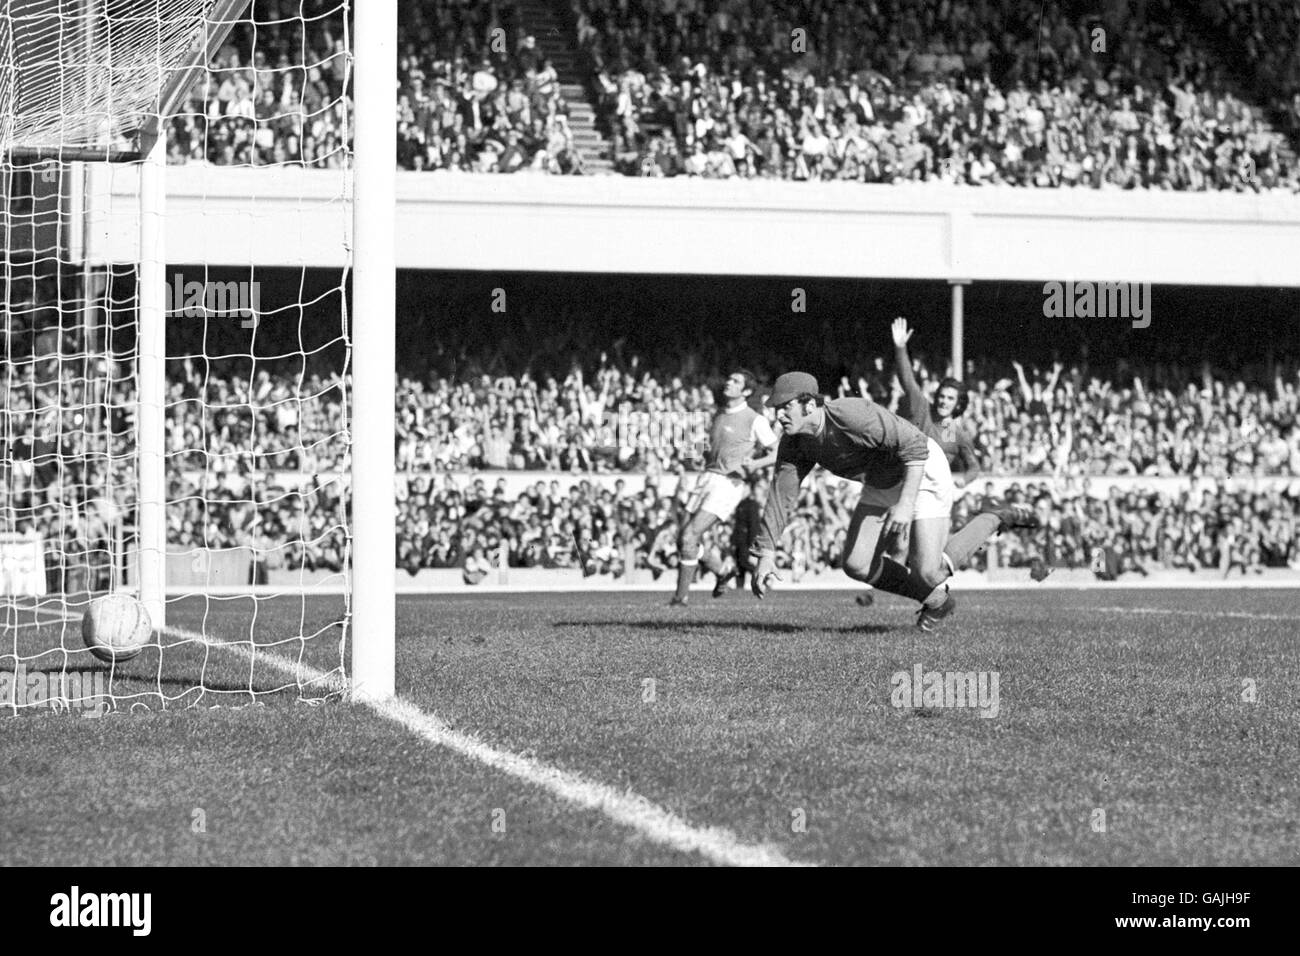 Il George Best (r, parzialmente nascosto) del Manchester United alza il braccio in celebrazione come il suo colpo batte il portiere dell'Arsenal Malcolm Webster per arricciarsi nell'angolo lontano della rete Foto Stock